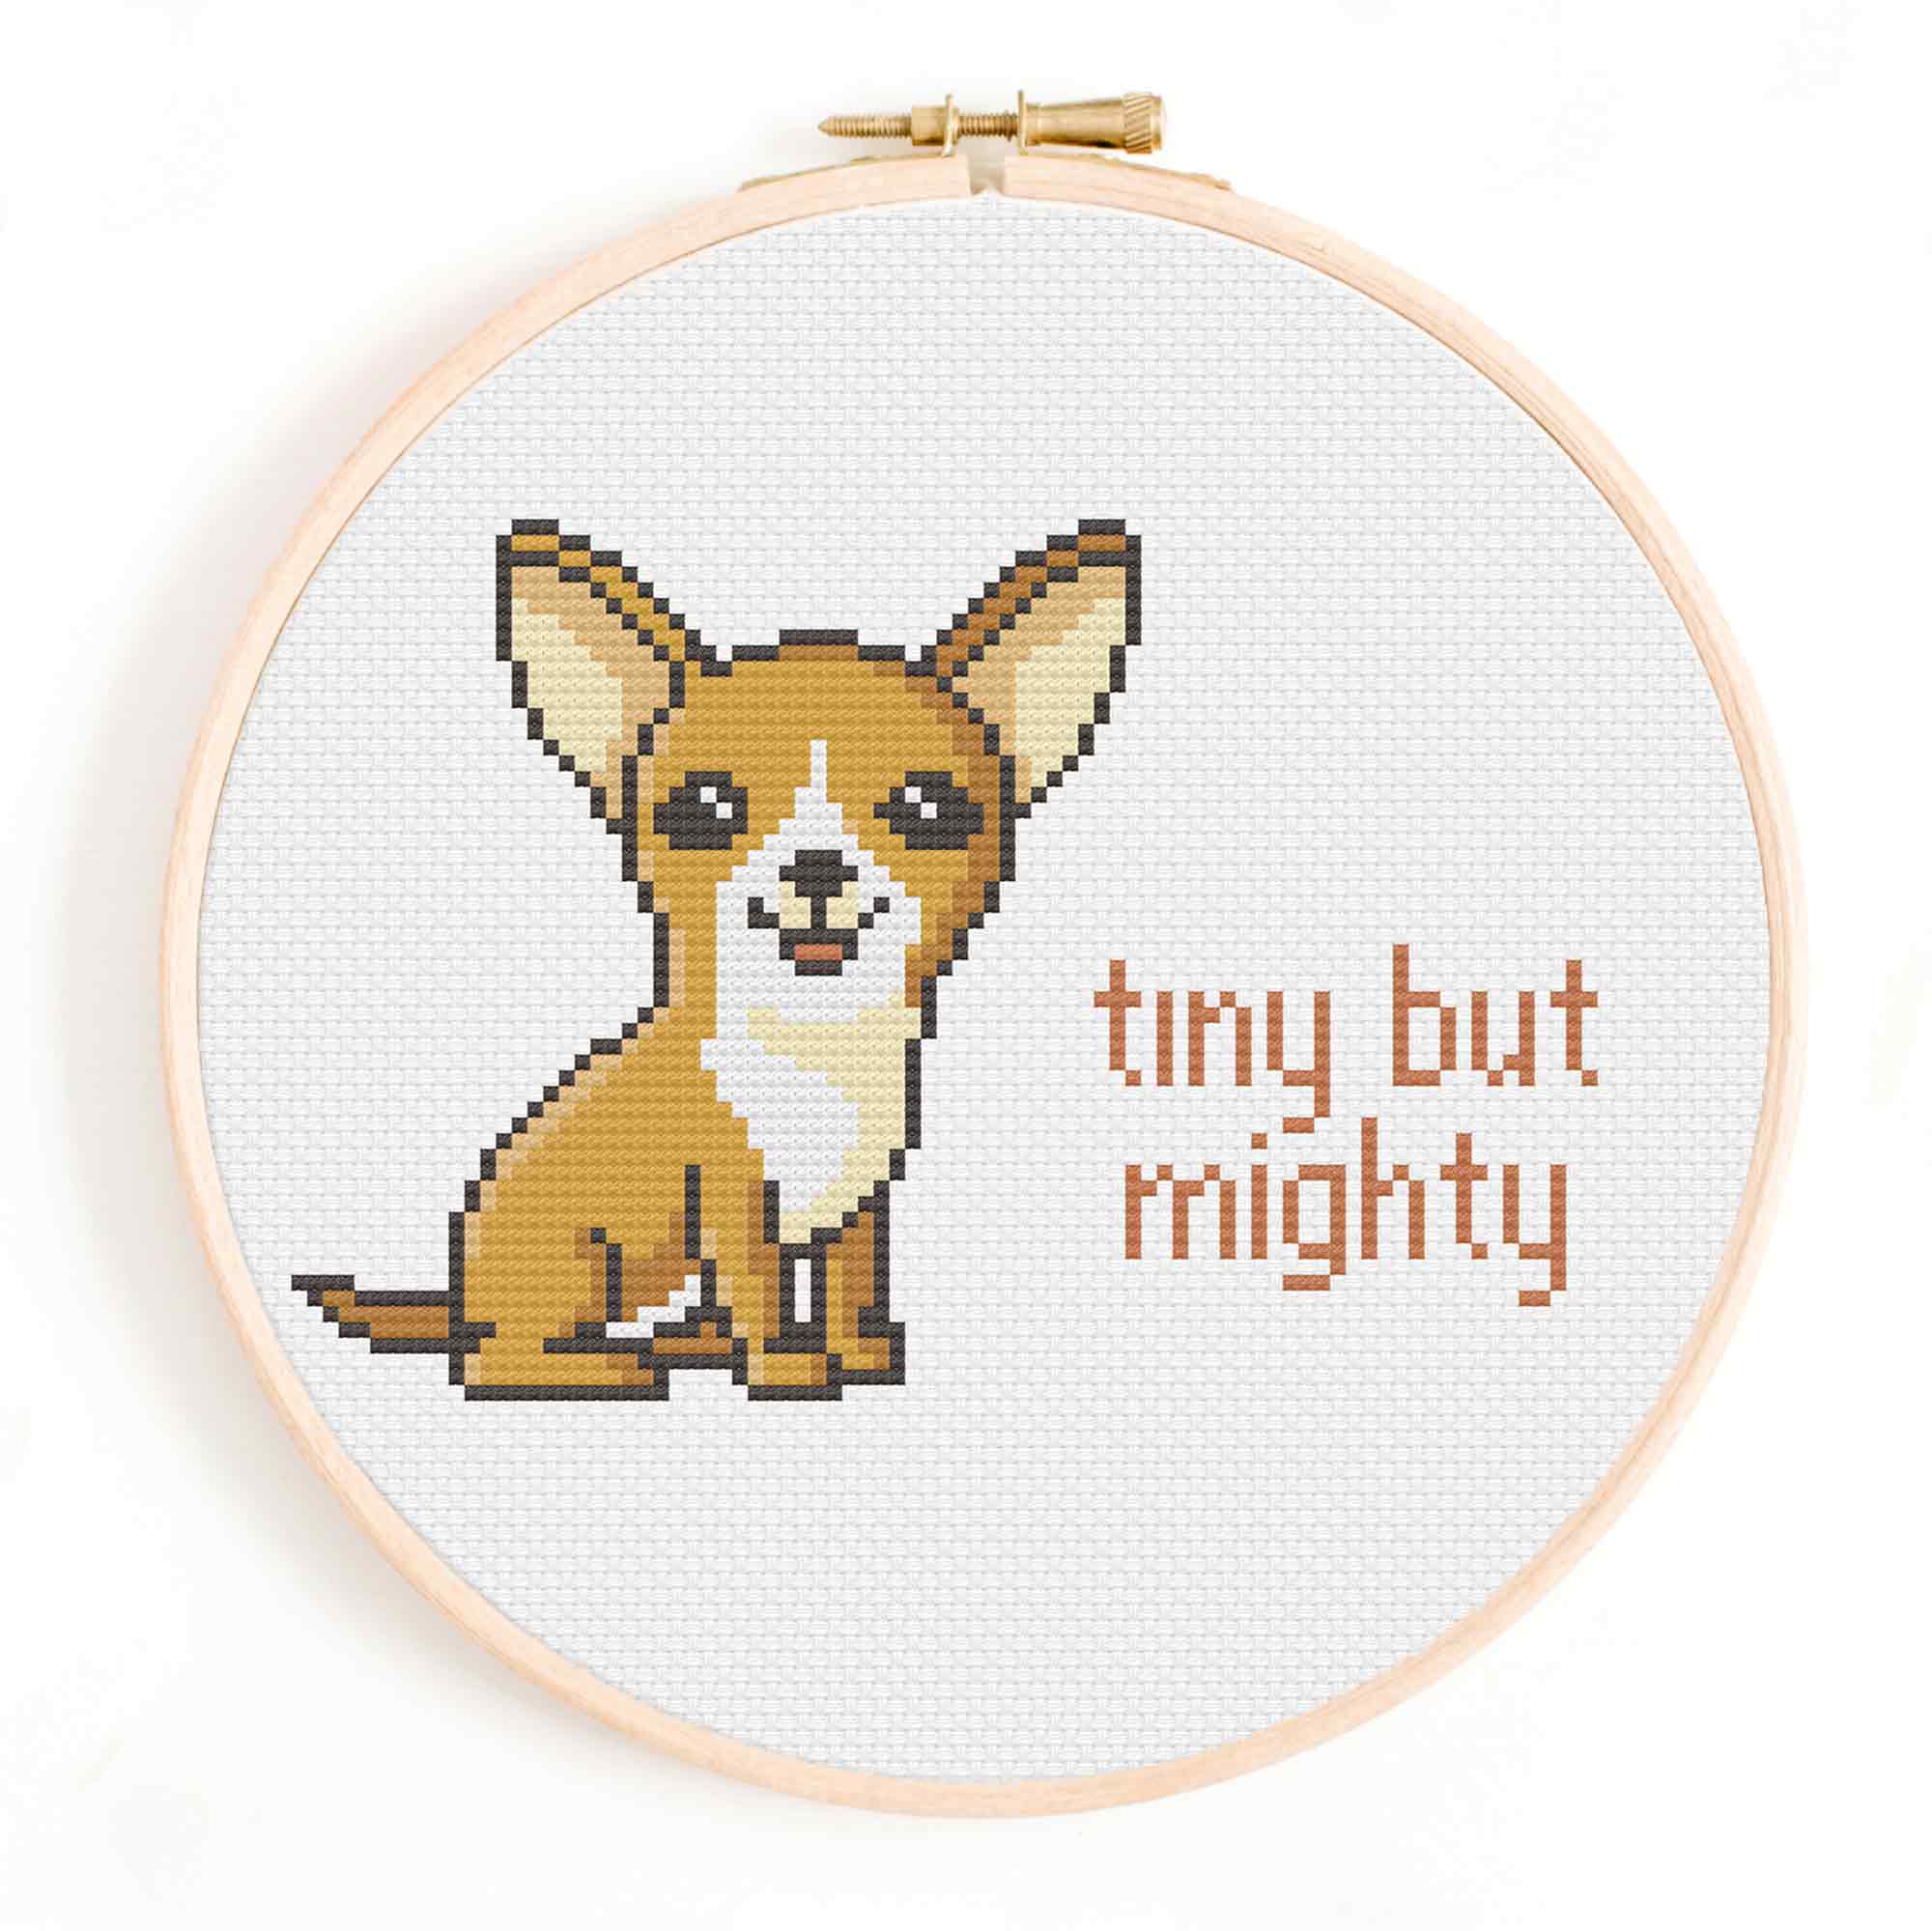 'Tiny but Mighty' Chihuahua Cross Stitch Pattern